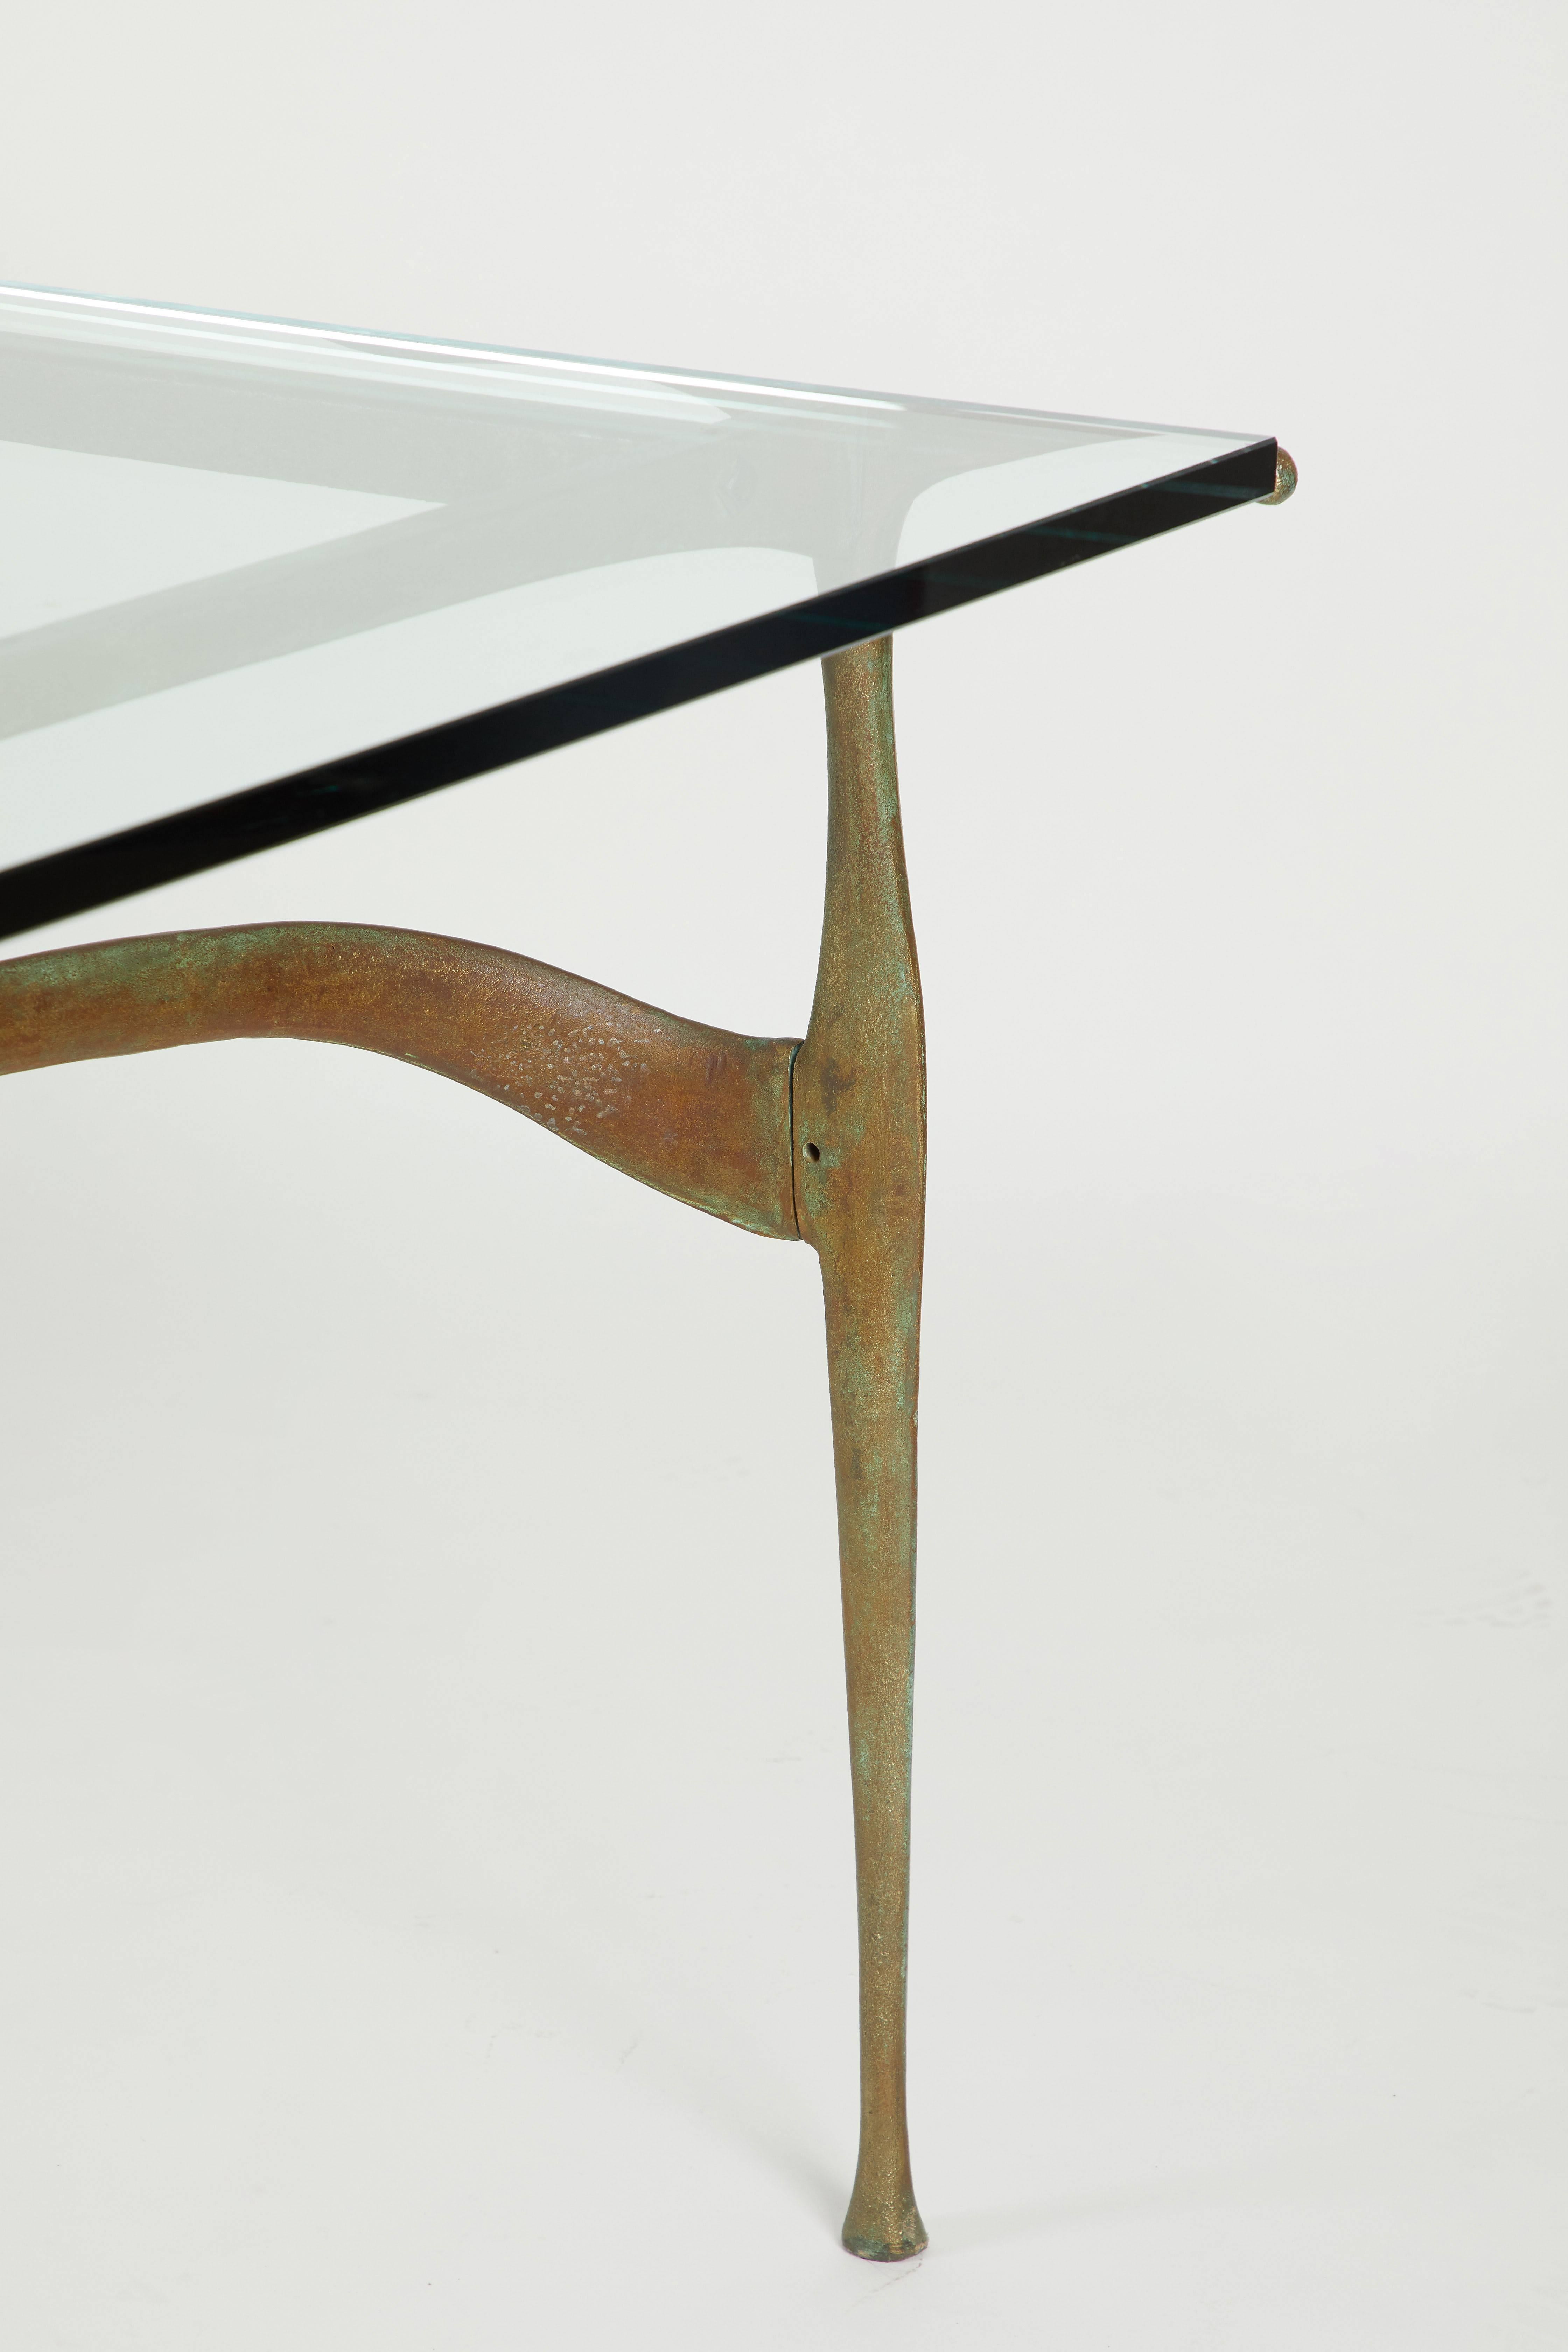 Dan Johnson „Gazelle“-Tisch (20. Jahrhundert)